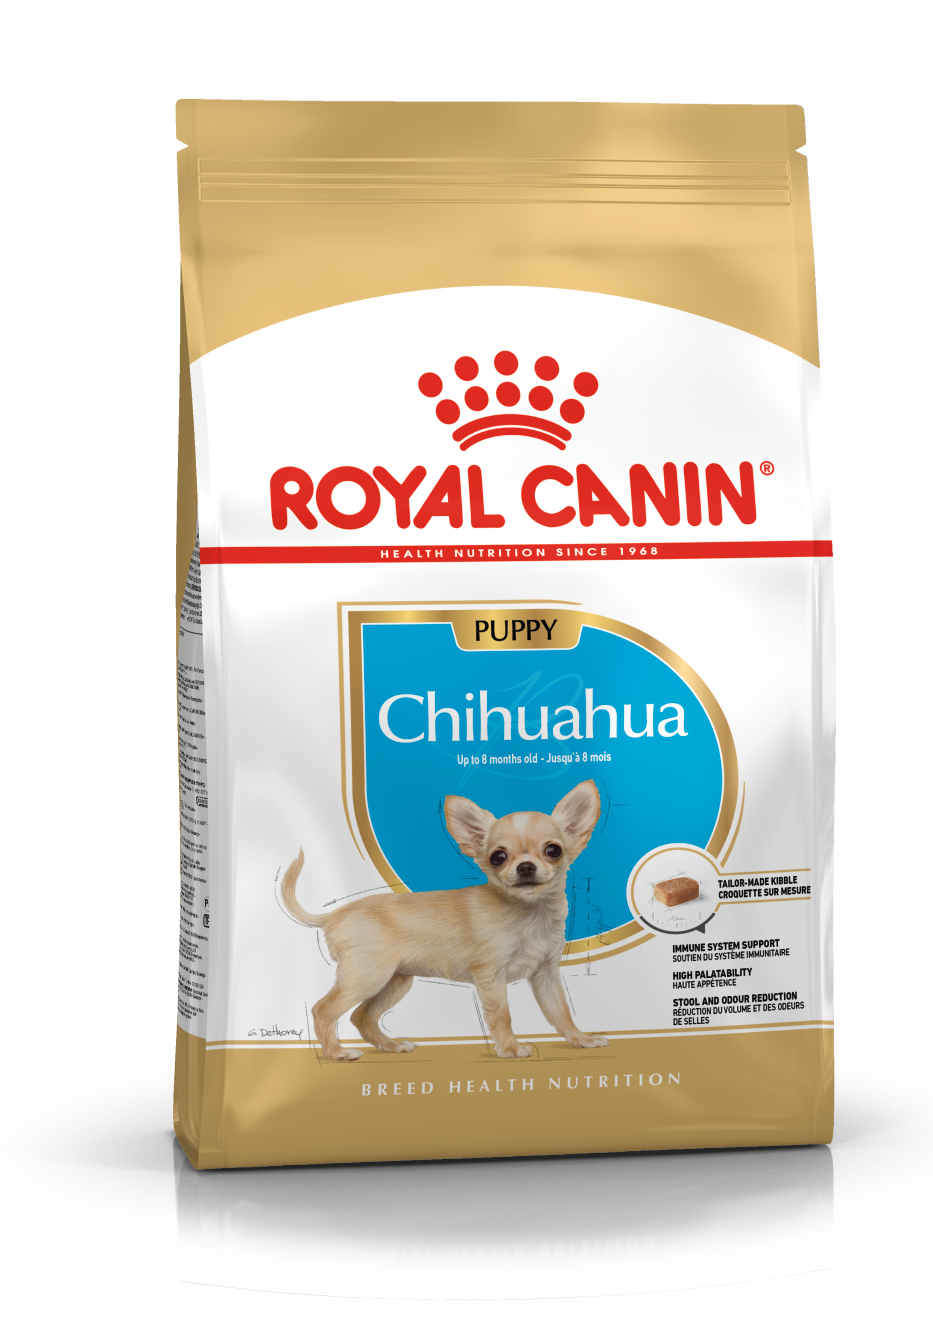 ROYAL CANIN Chihuahua Puppy Dog Food